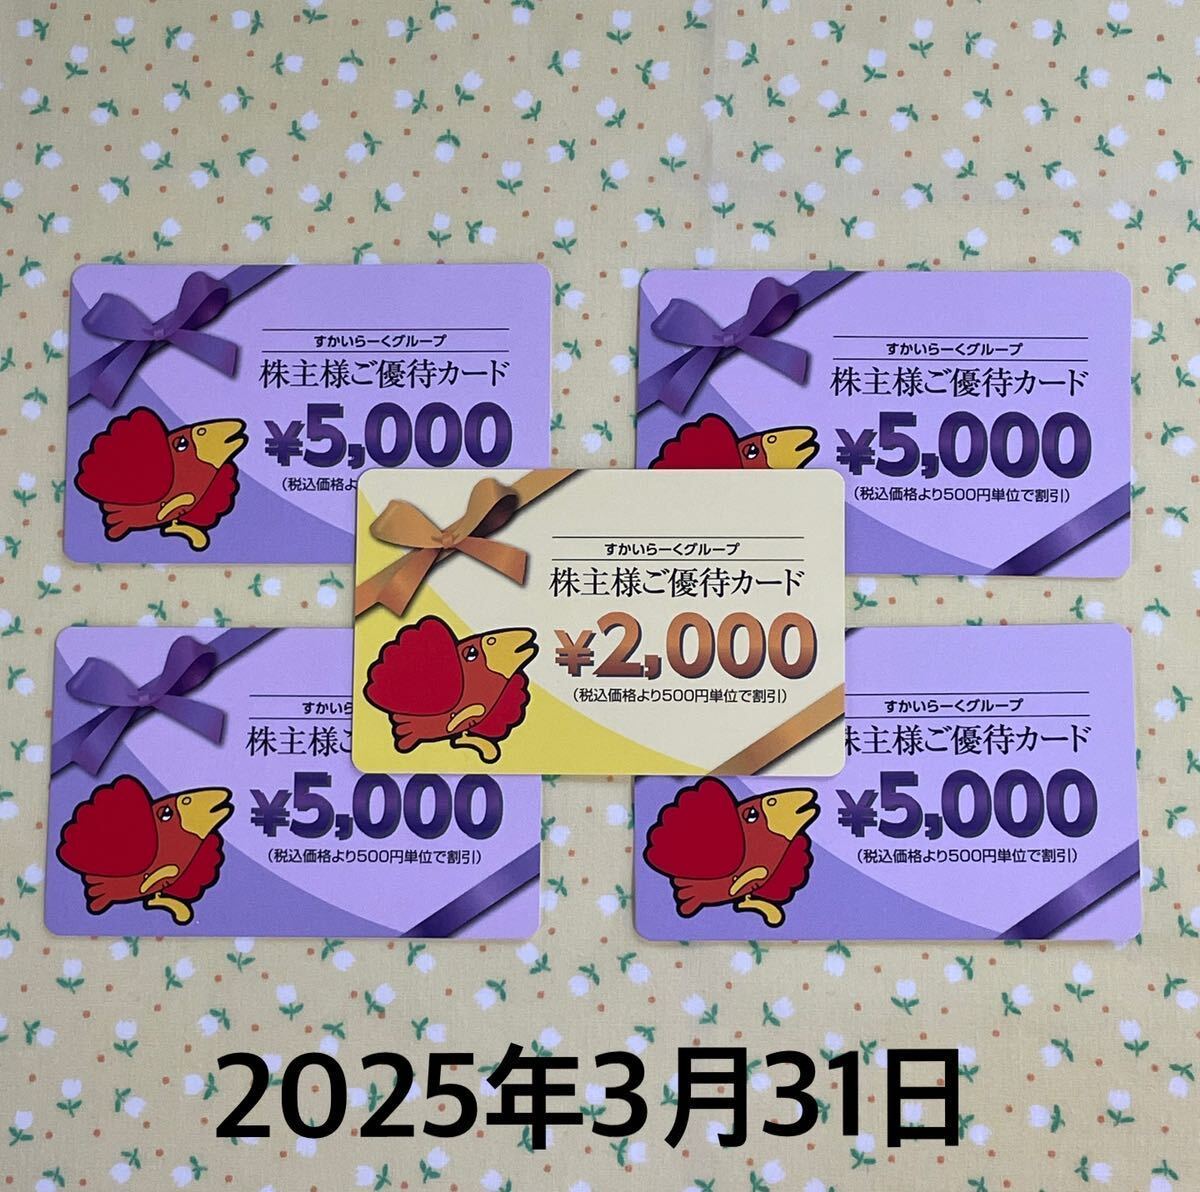 【送料無料】すかいらーく 株主優待カード 22000円分_送料無料